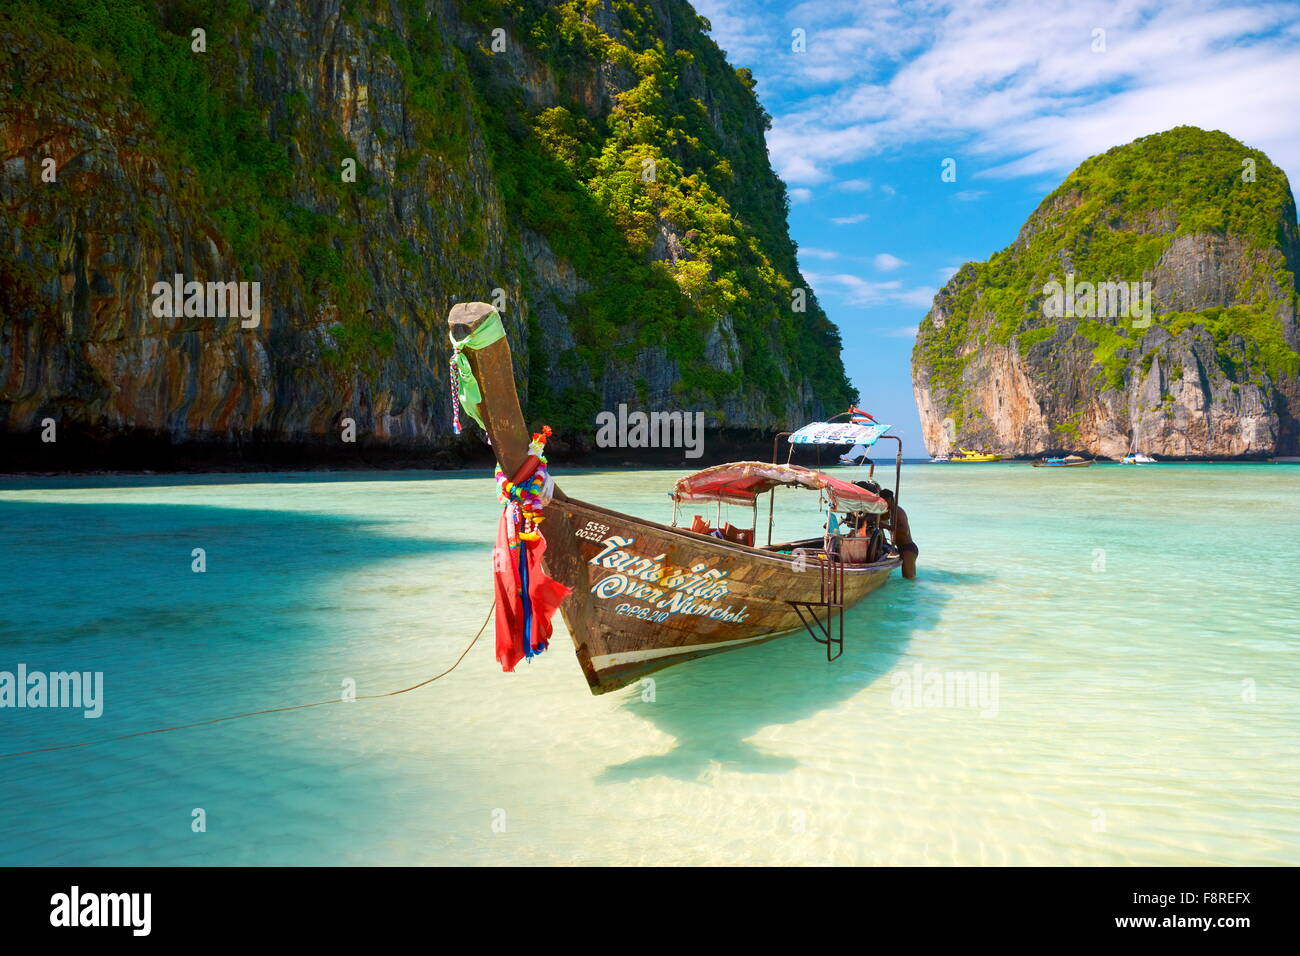 Thailand - tropische Maya Bay auf Phi Phi Leh Island, Andamanensee Stockfoto